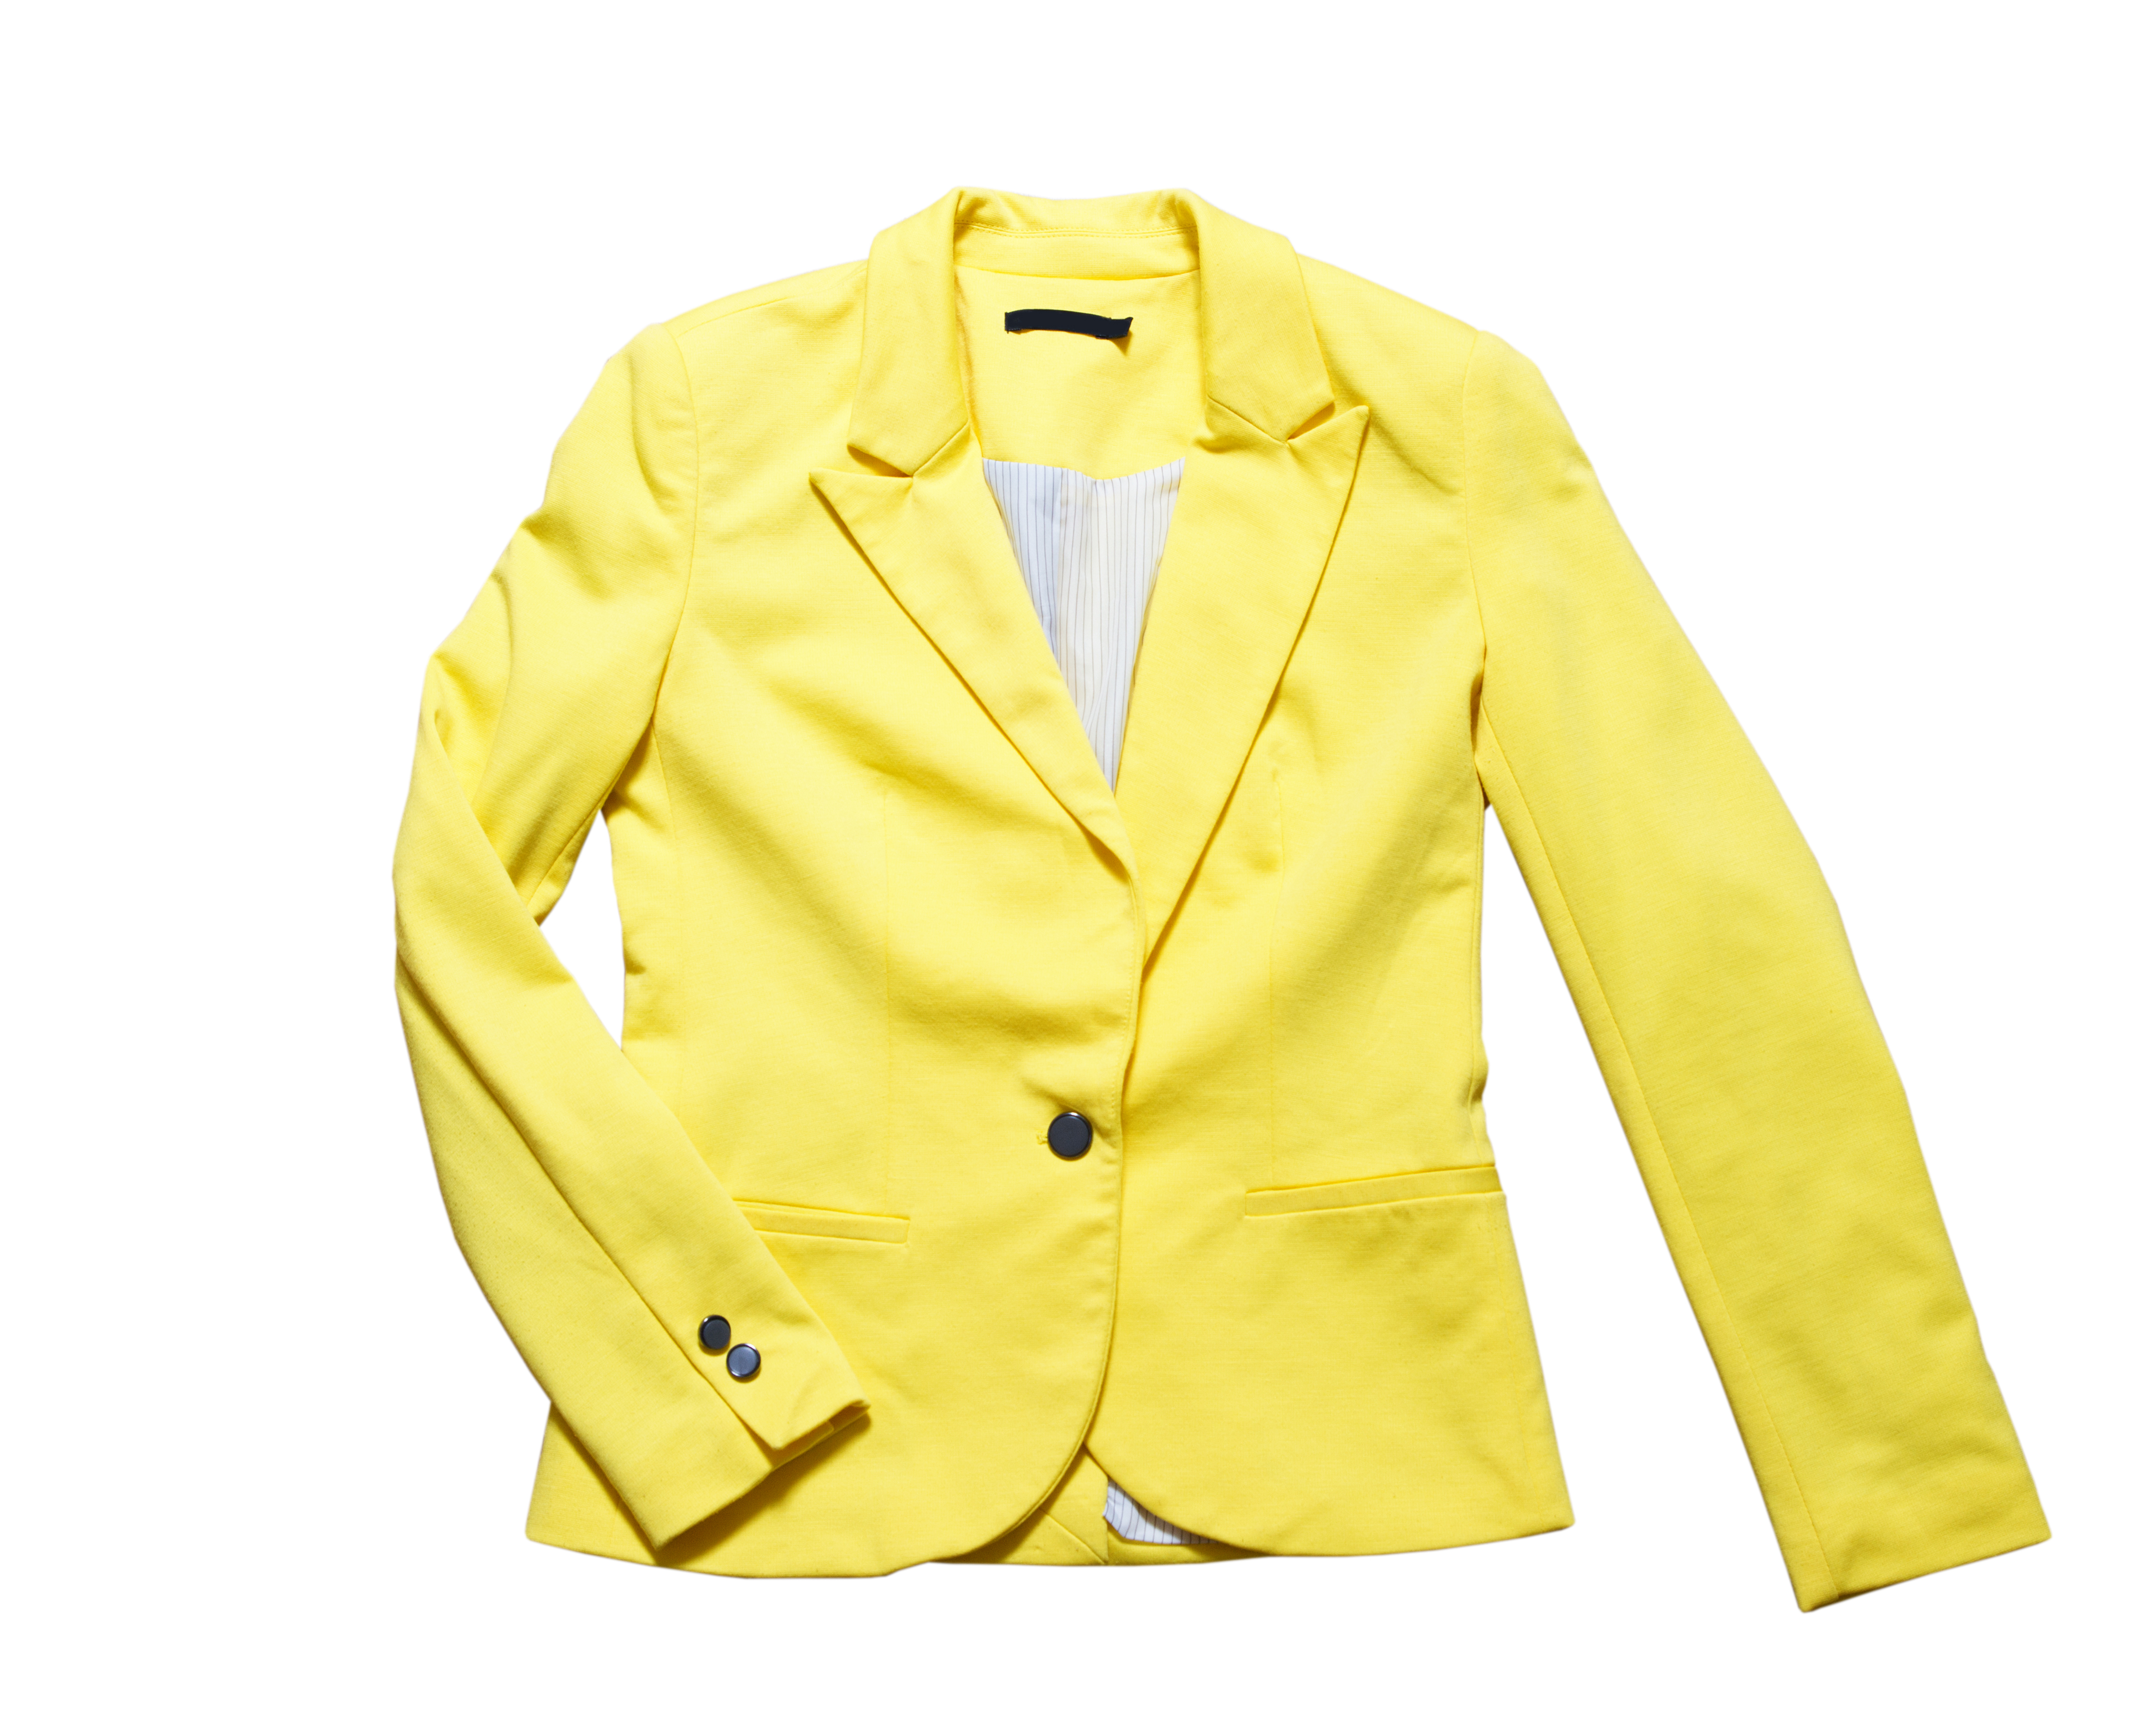 Eine klassische gelbe Jacke | Quelle: Shutterstock